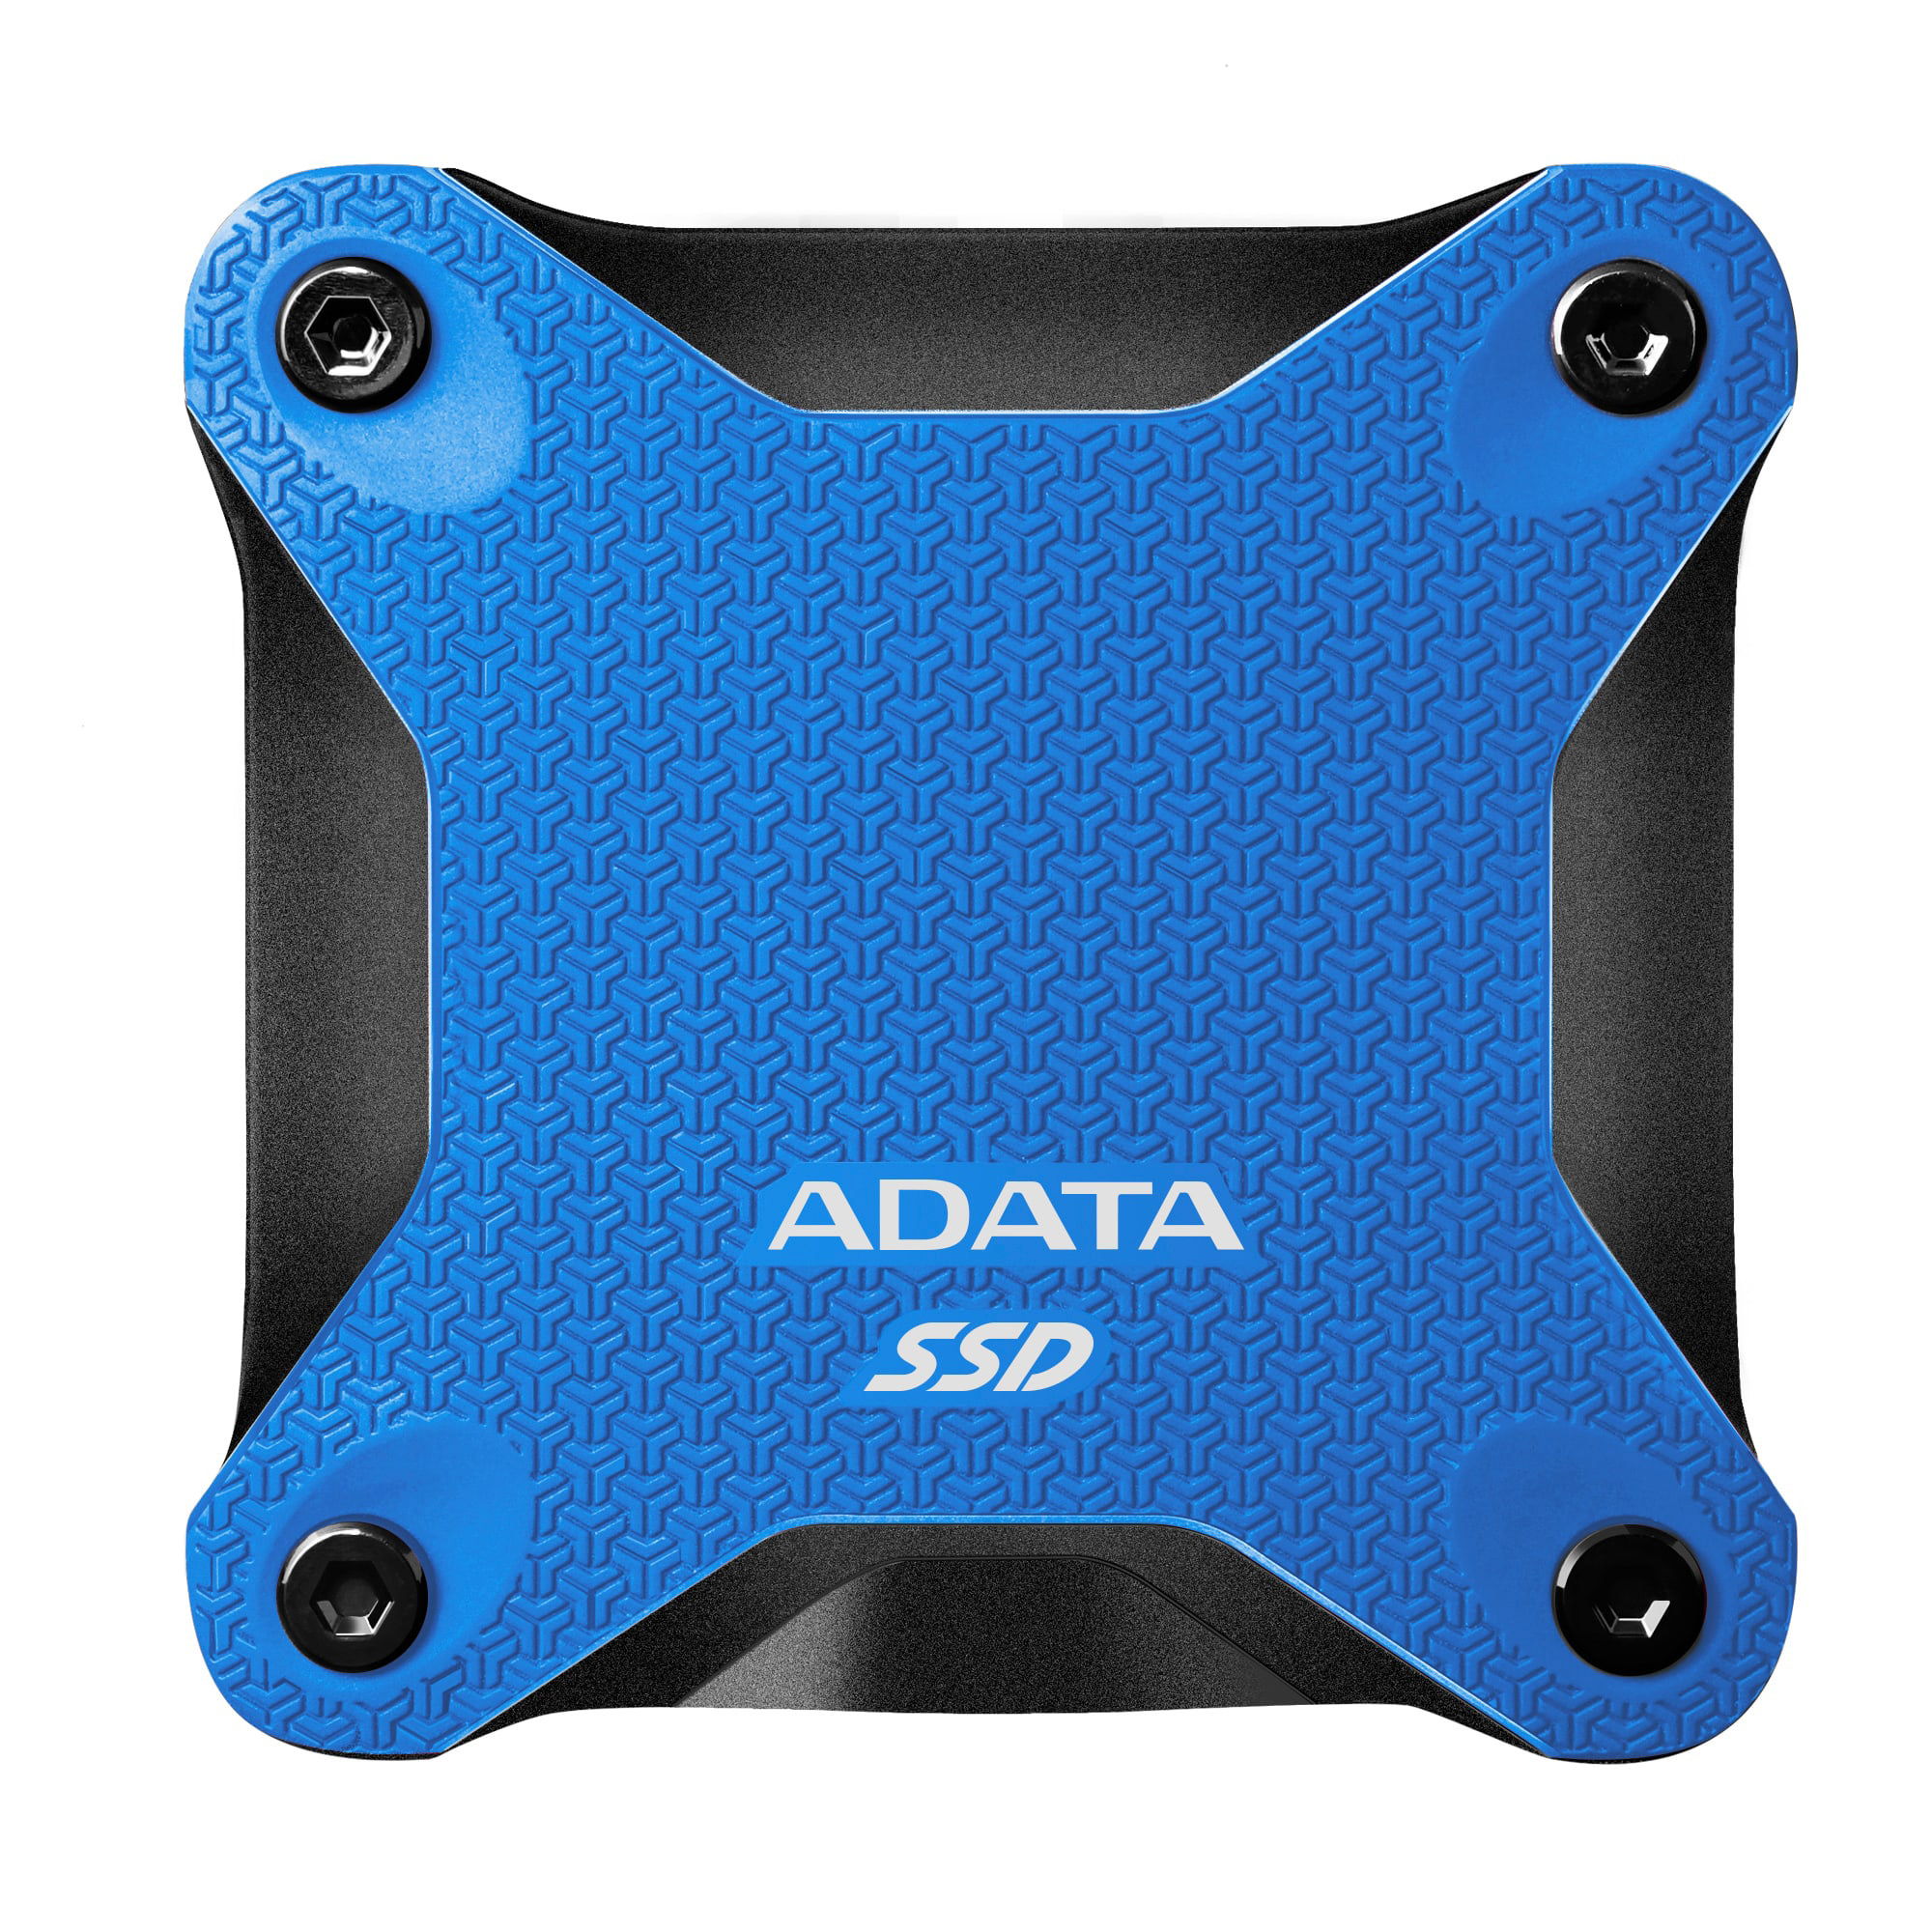 Externi SSD Adata 240GB ASD600Q Blue AD